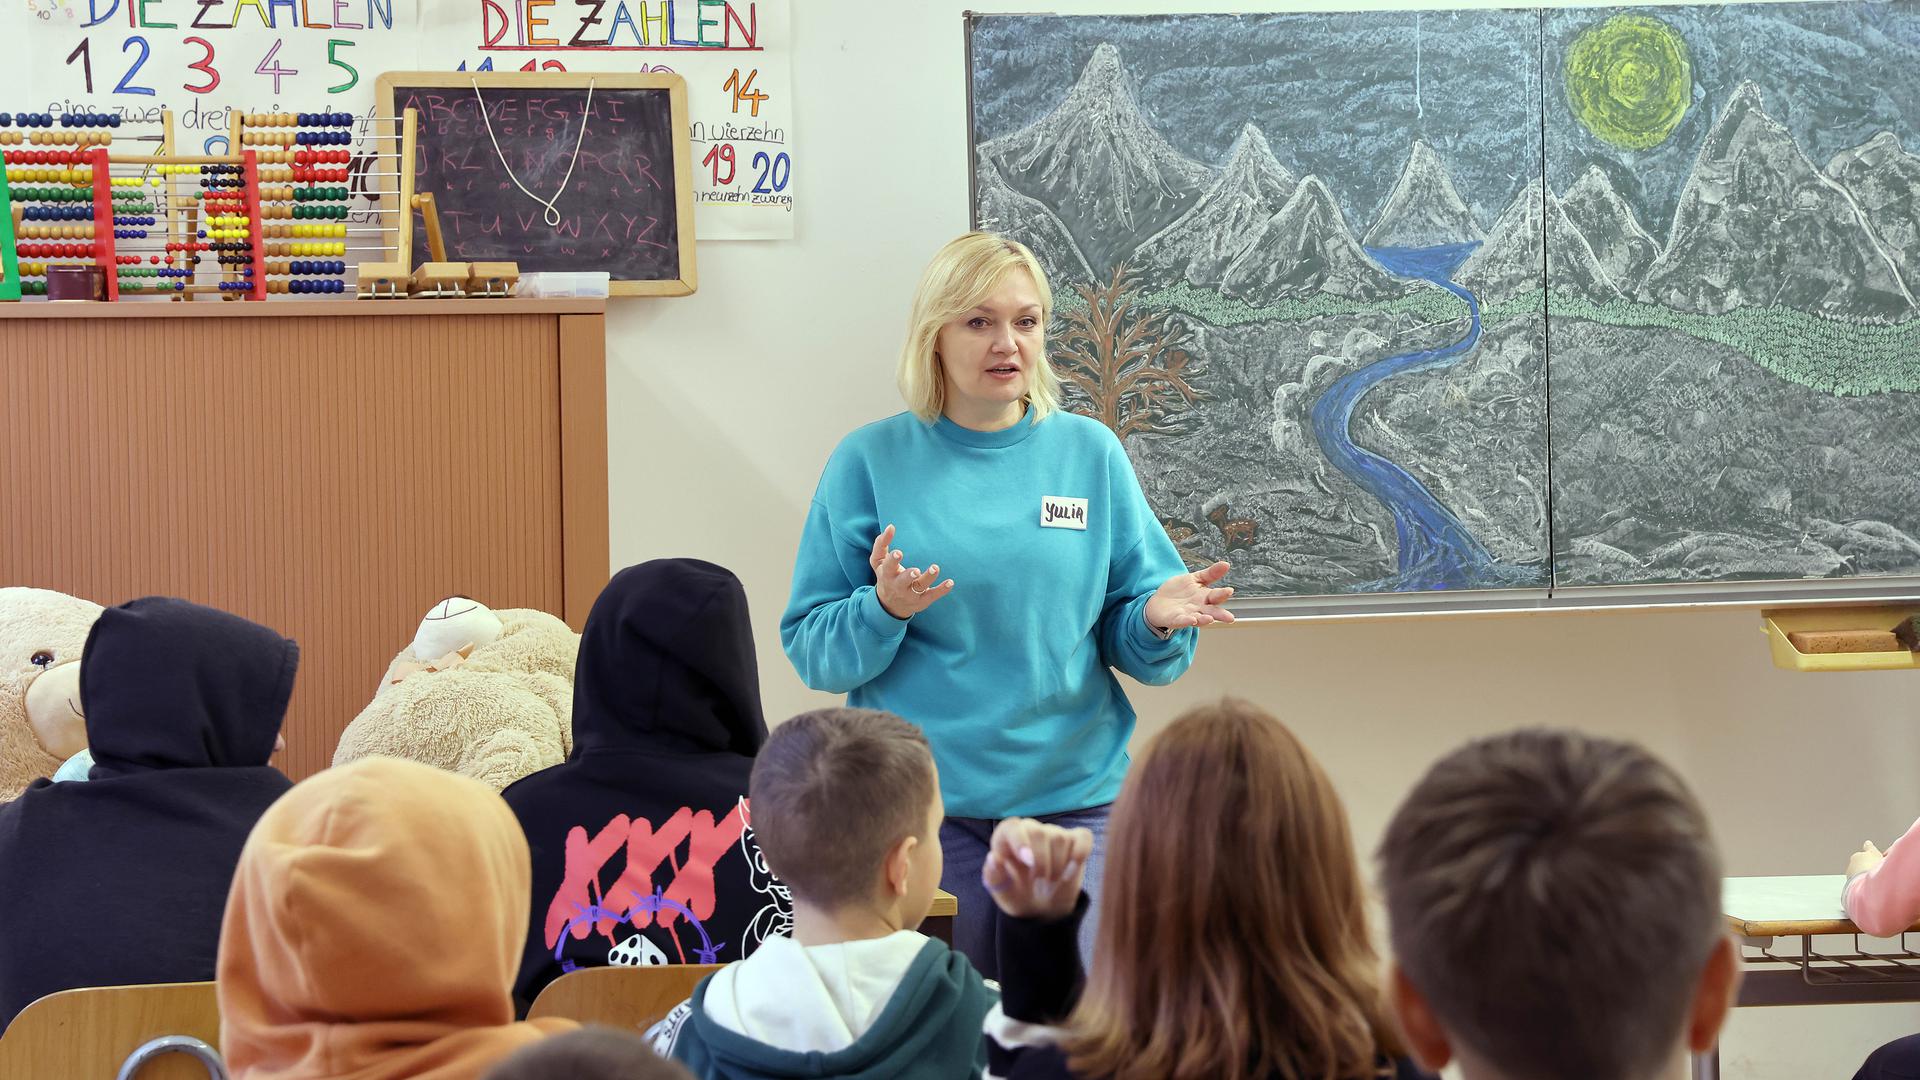 Ukrainische Schulpsychologin Yulia Machenko